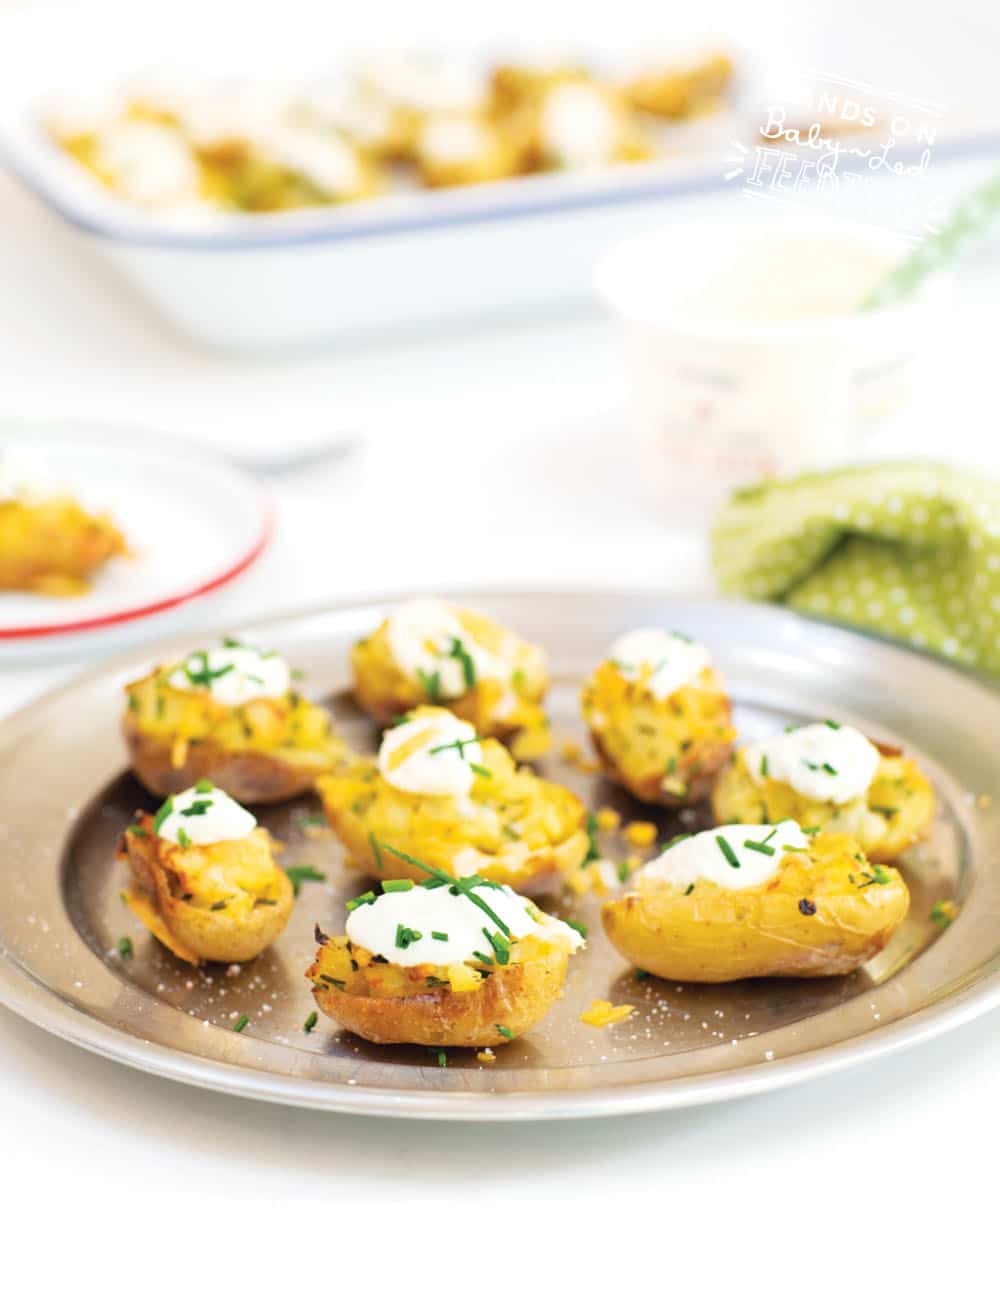 Baby Led Feeding Stuffed Irish Potatoes Recipe Images